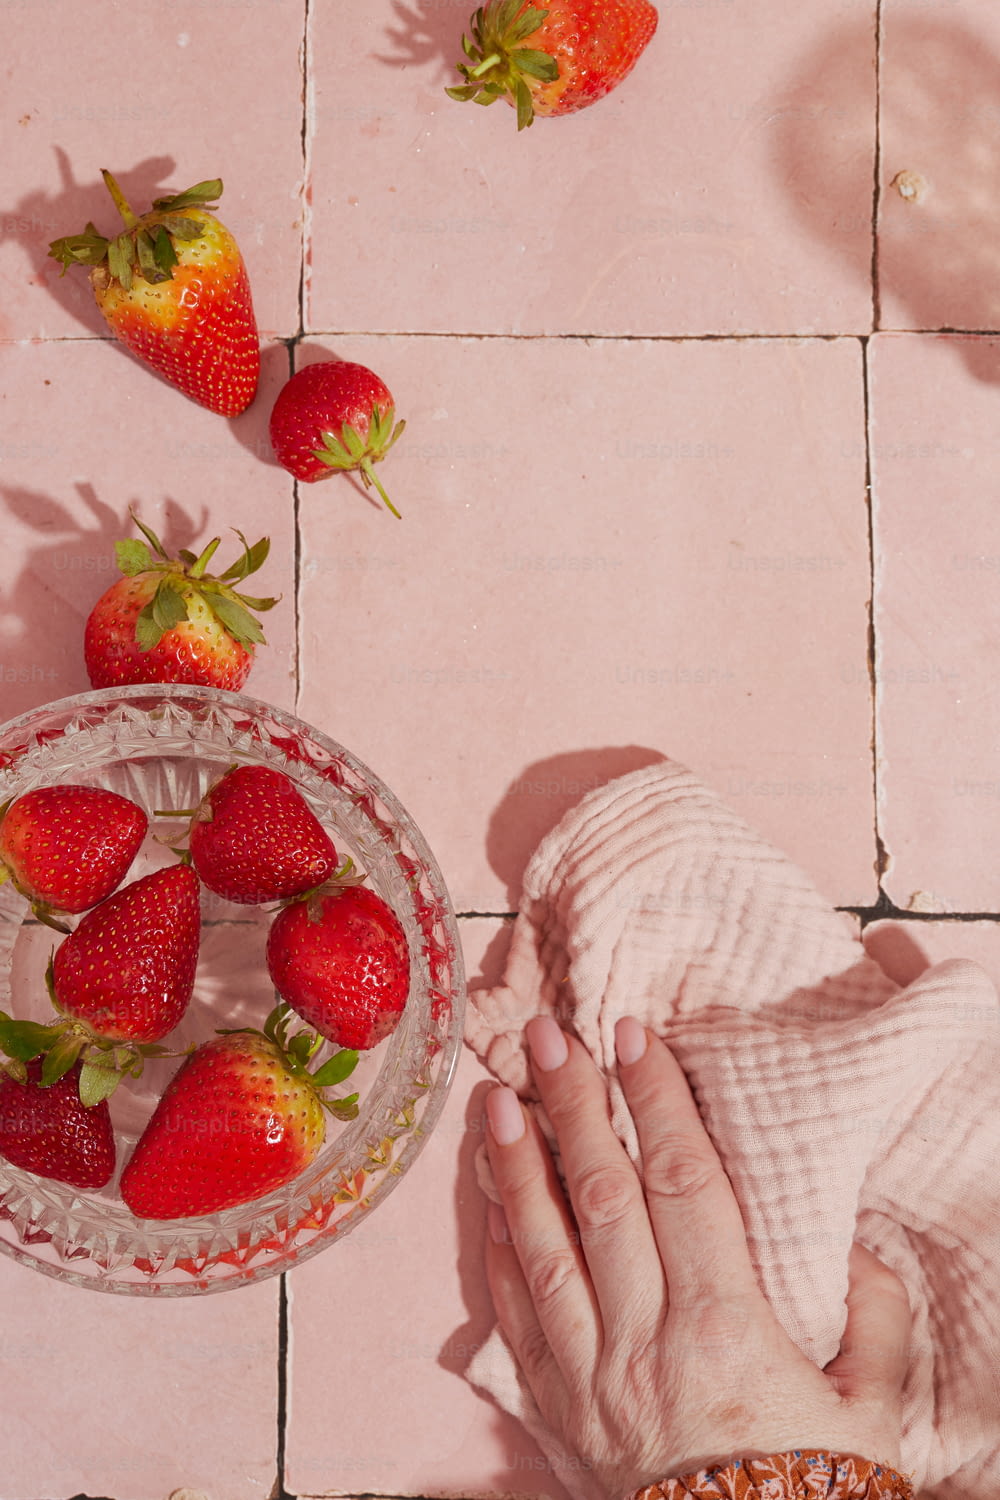 분홍색 타일 바닥에 딸기 한 그릇과 딸기 한 그릇